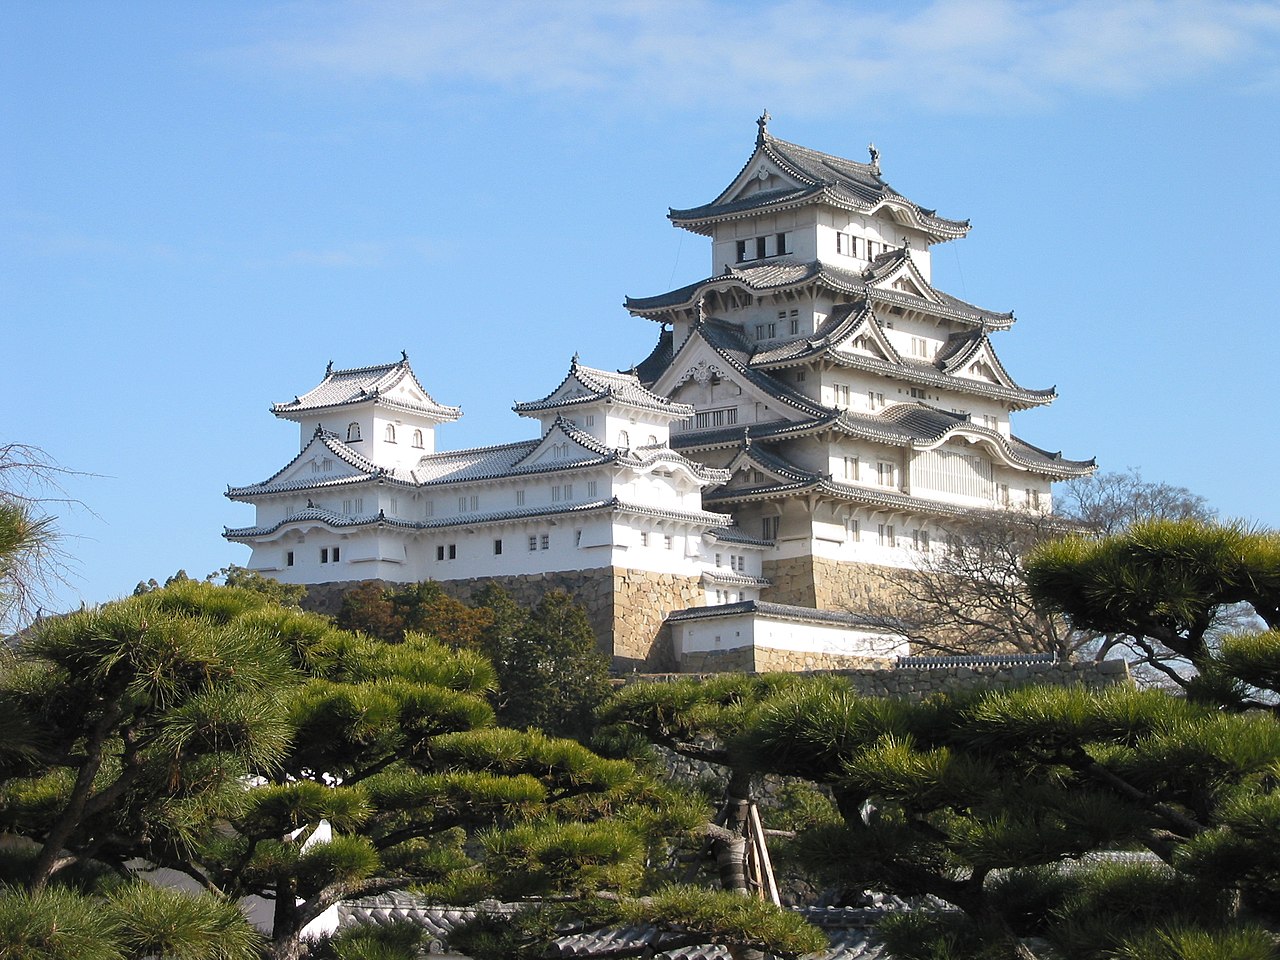 A look at Himeji Castle’s facade